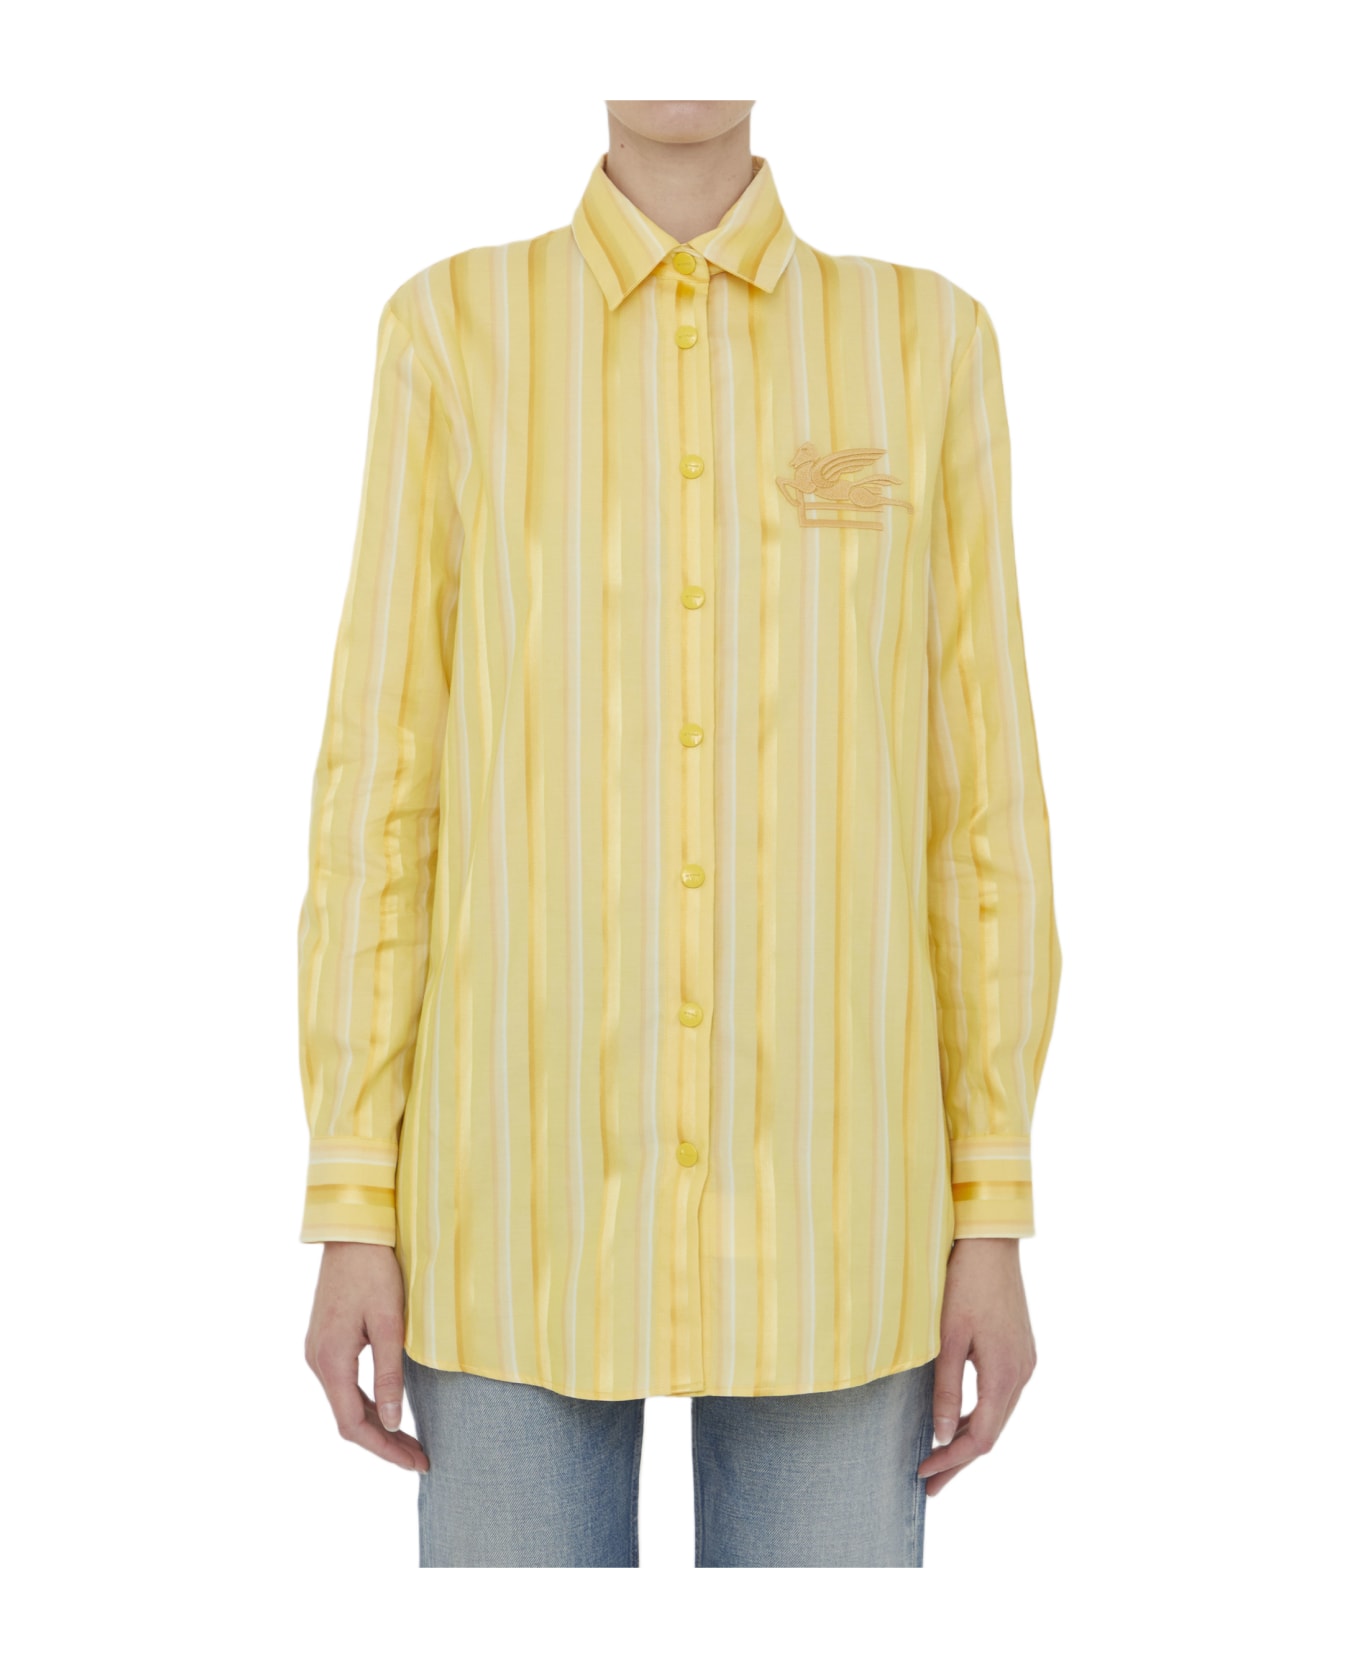 Etro Striped Shirt With Pegaso - Yellow & Orange